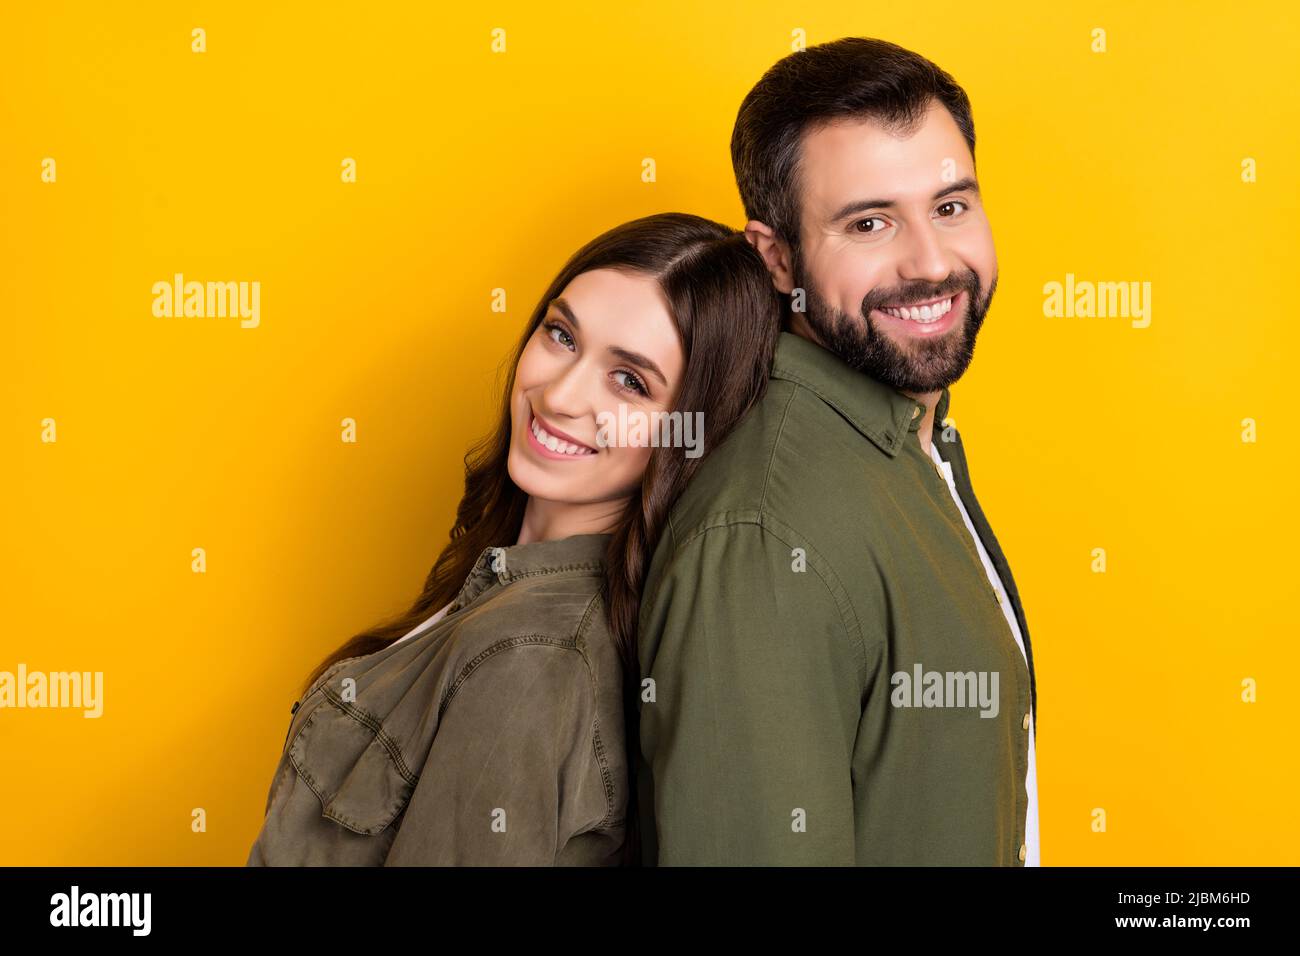 Profil-Seitenfoto von Rücken zu Rücken Menschen Geschwister verbringen freie Wochenend-Zeit zusammen isoliert auf gelbem Hintergrund Stockfoto